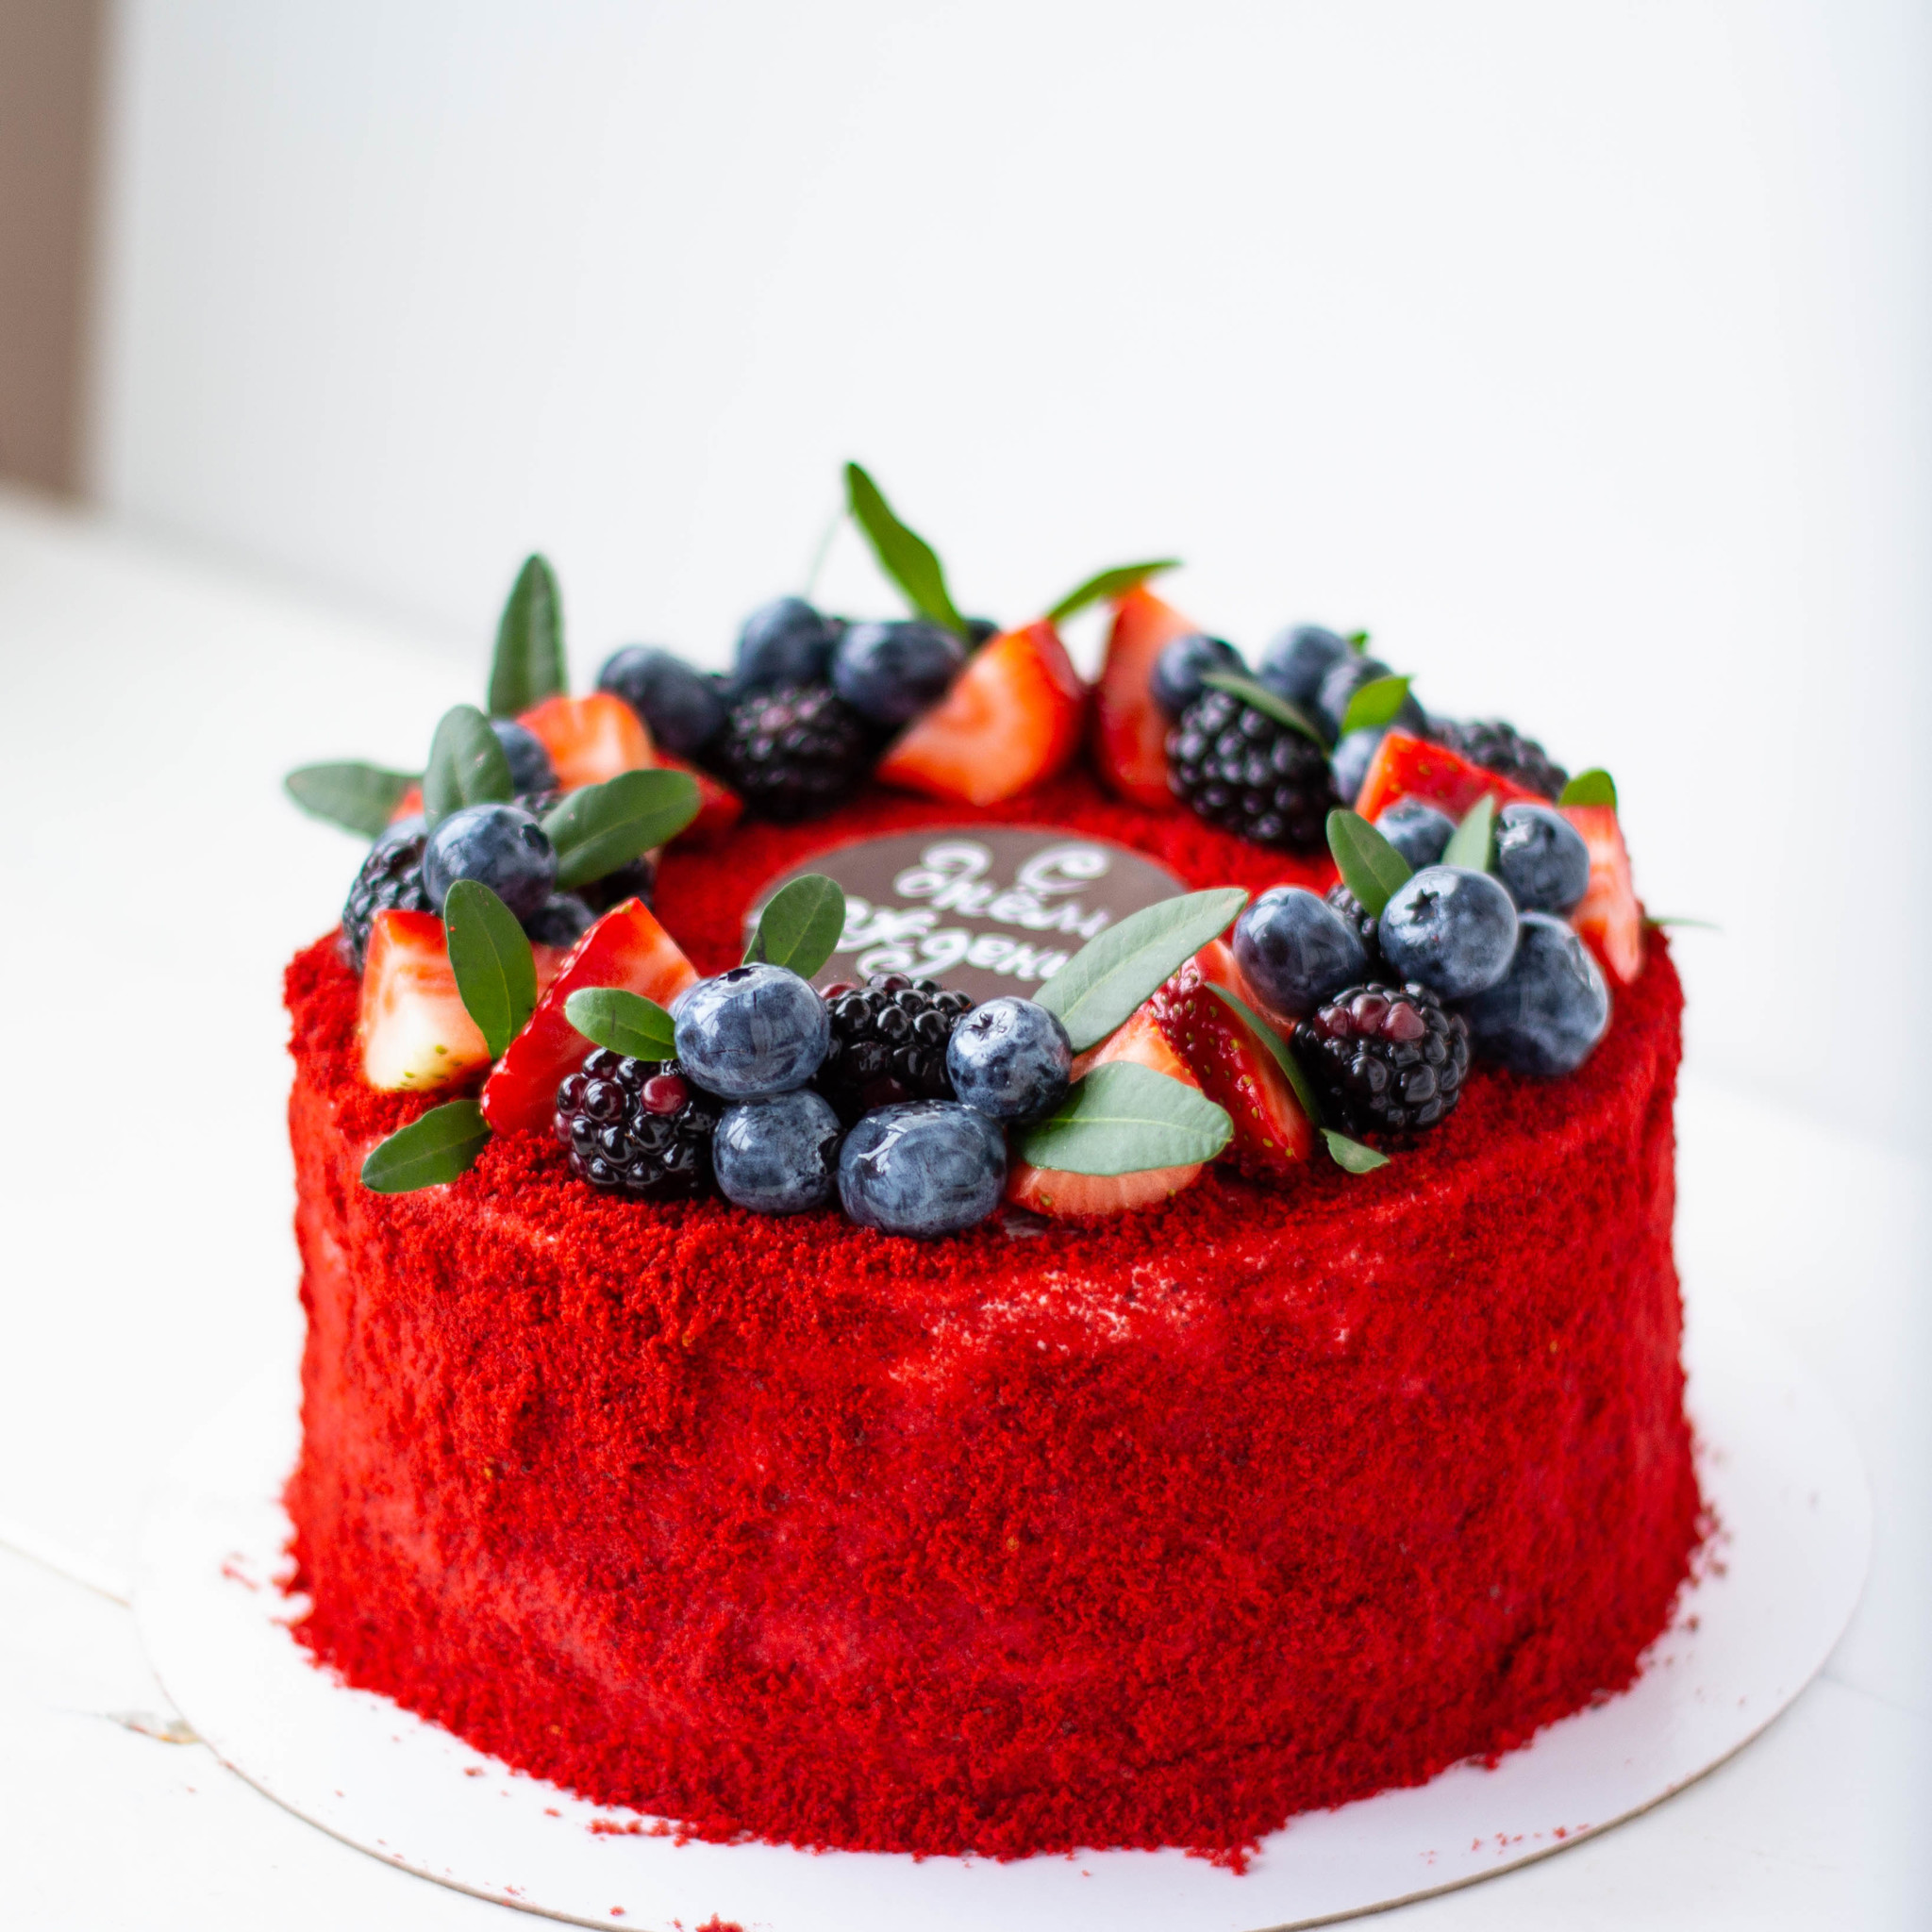 Варианты украшения торта красный бархат фото